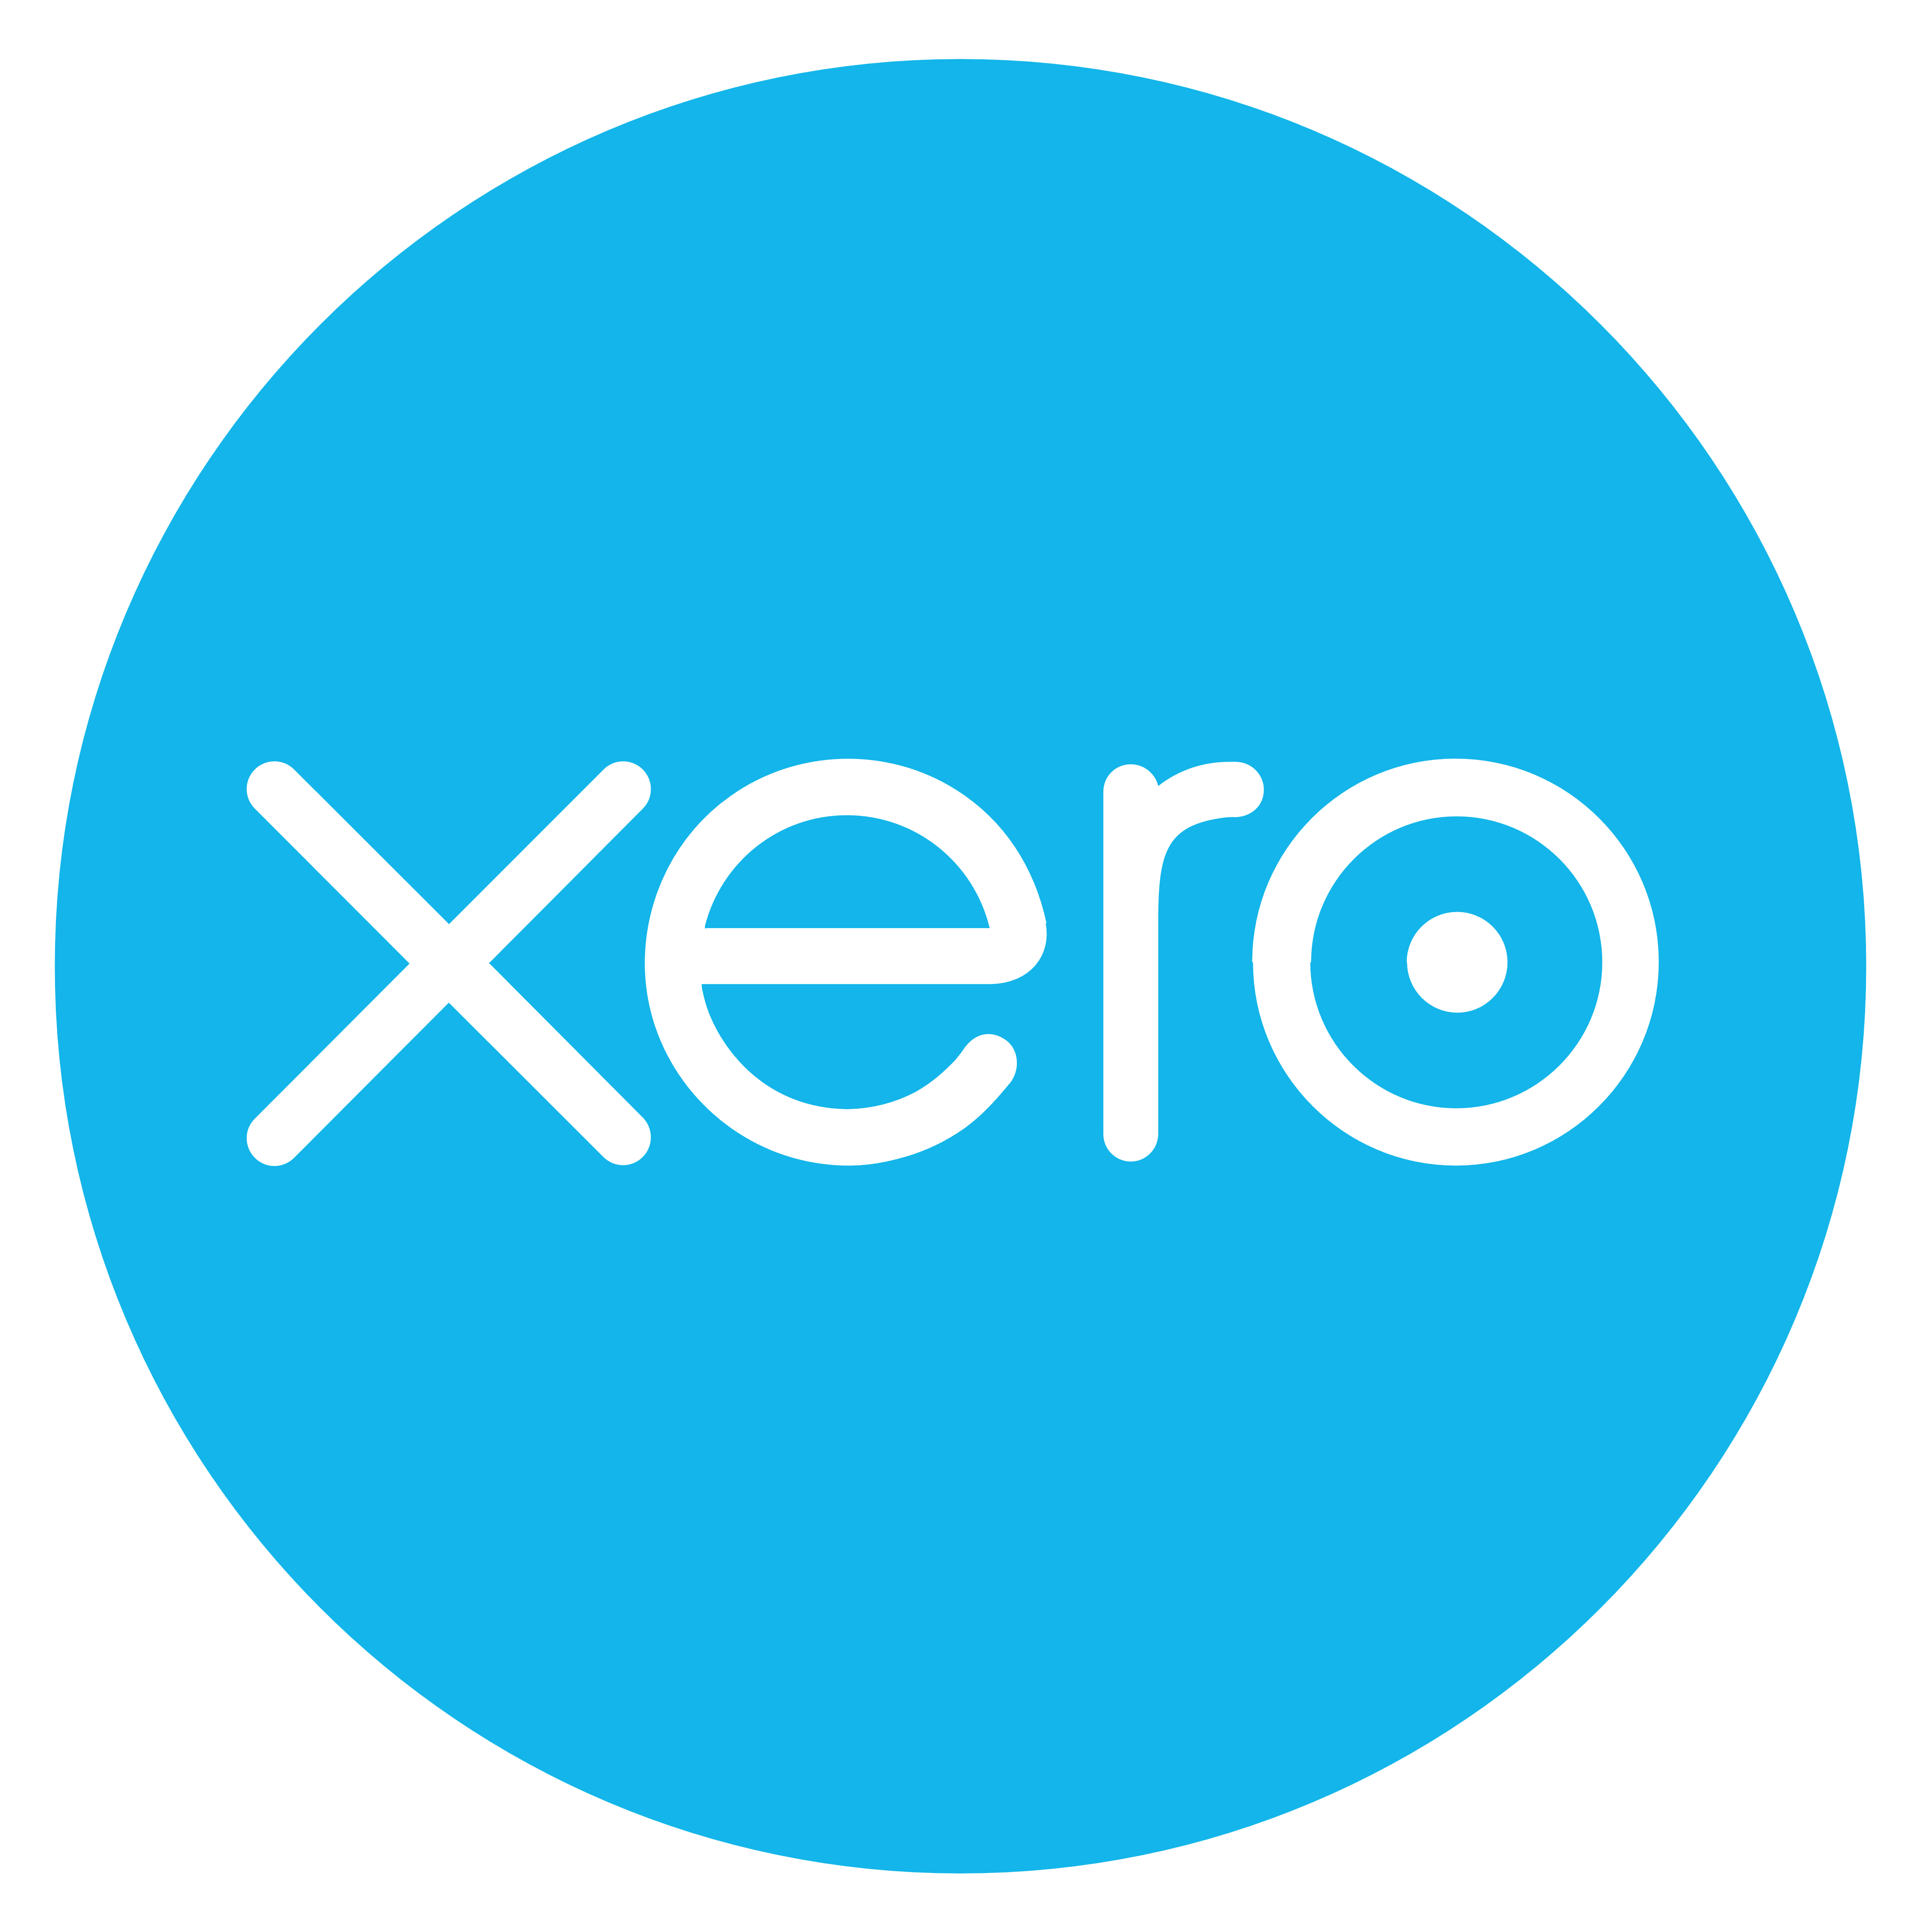 Xero logo, logotype